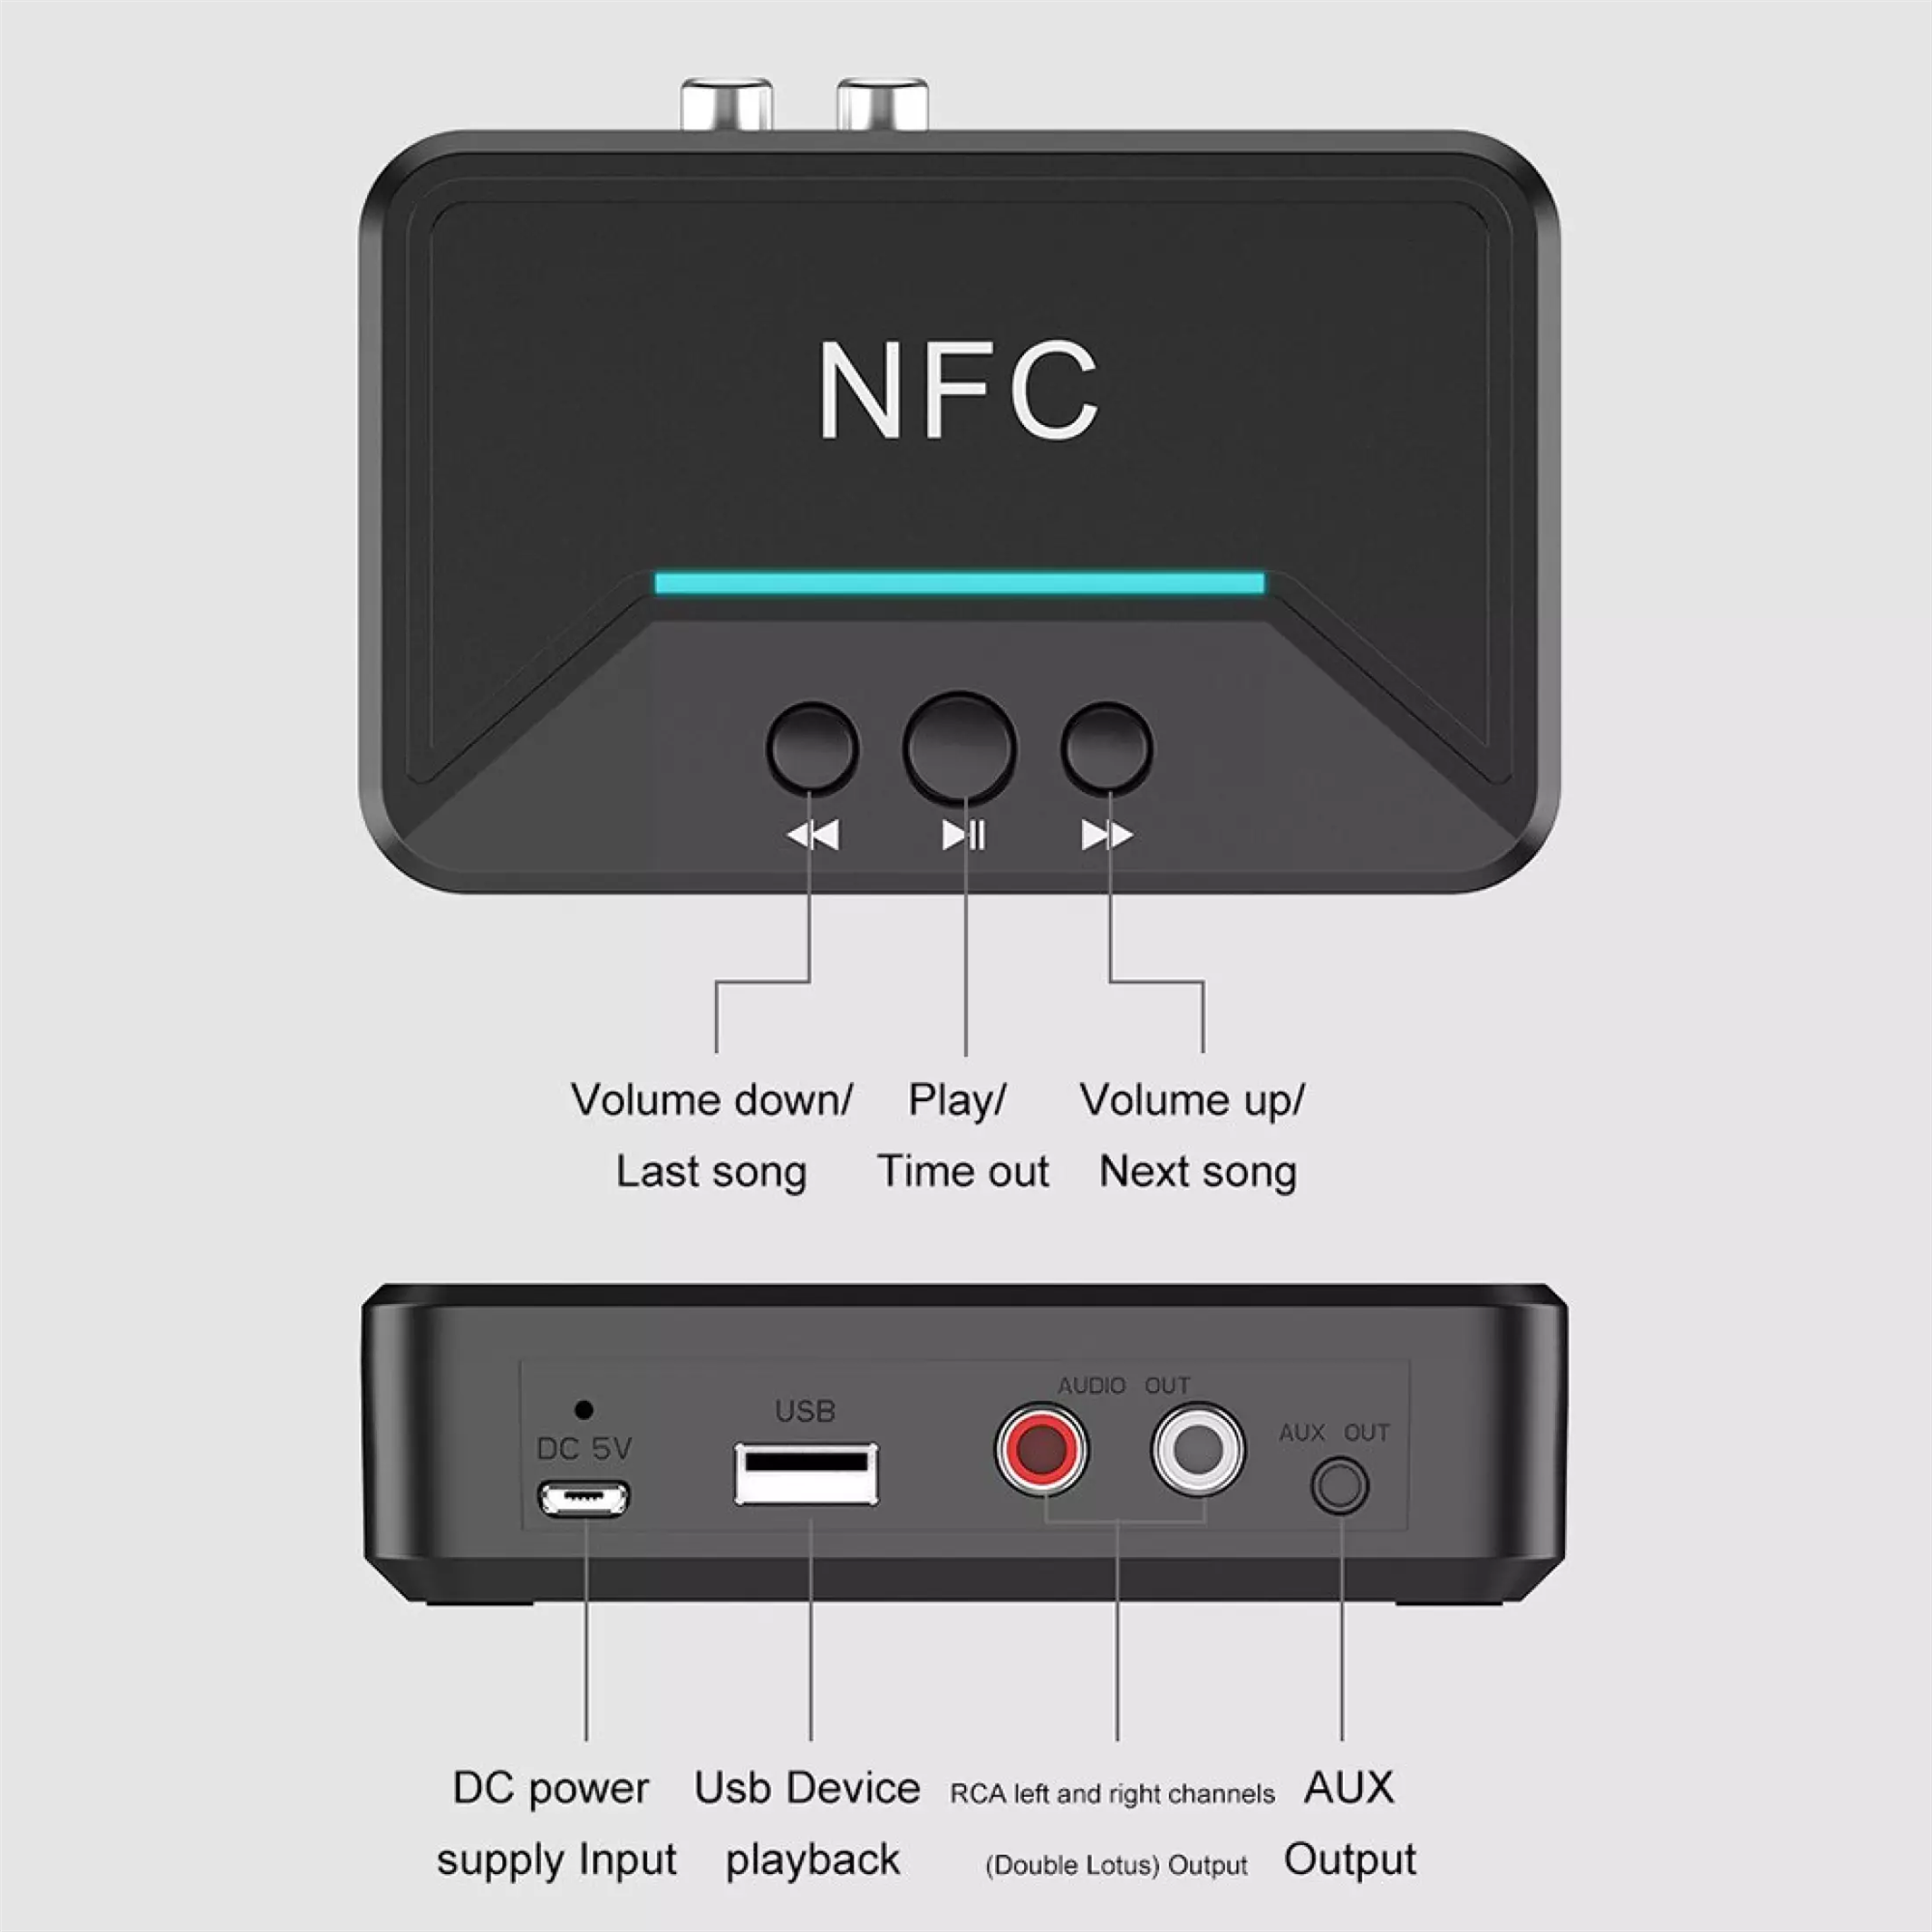 เกี่ยวกับ NFC Adapter Boxเครื่องรับสัญญาณเสียงสเตอริโอ Blth Type ไร้สาย 3.5 มม. AUX RCA TFเครื่องเล่นเพลงAudio Car Speaker